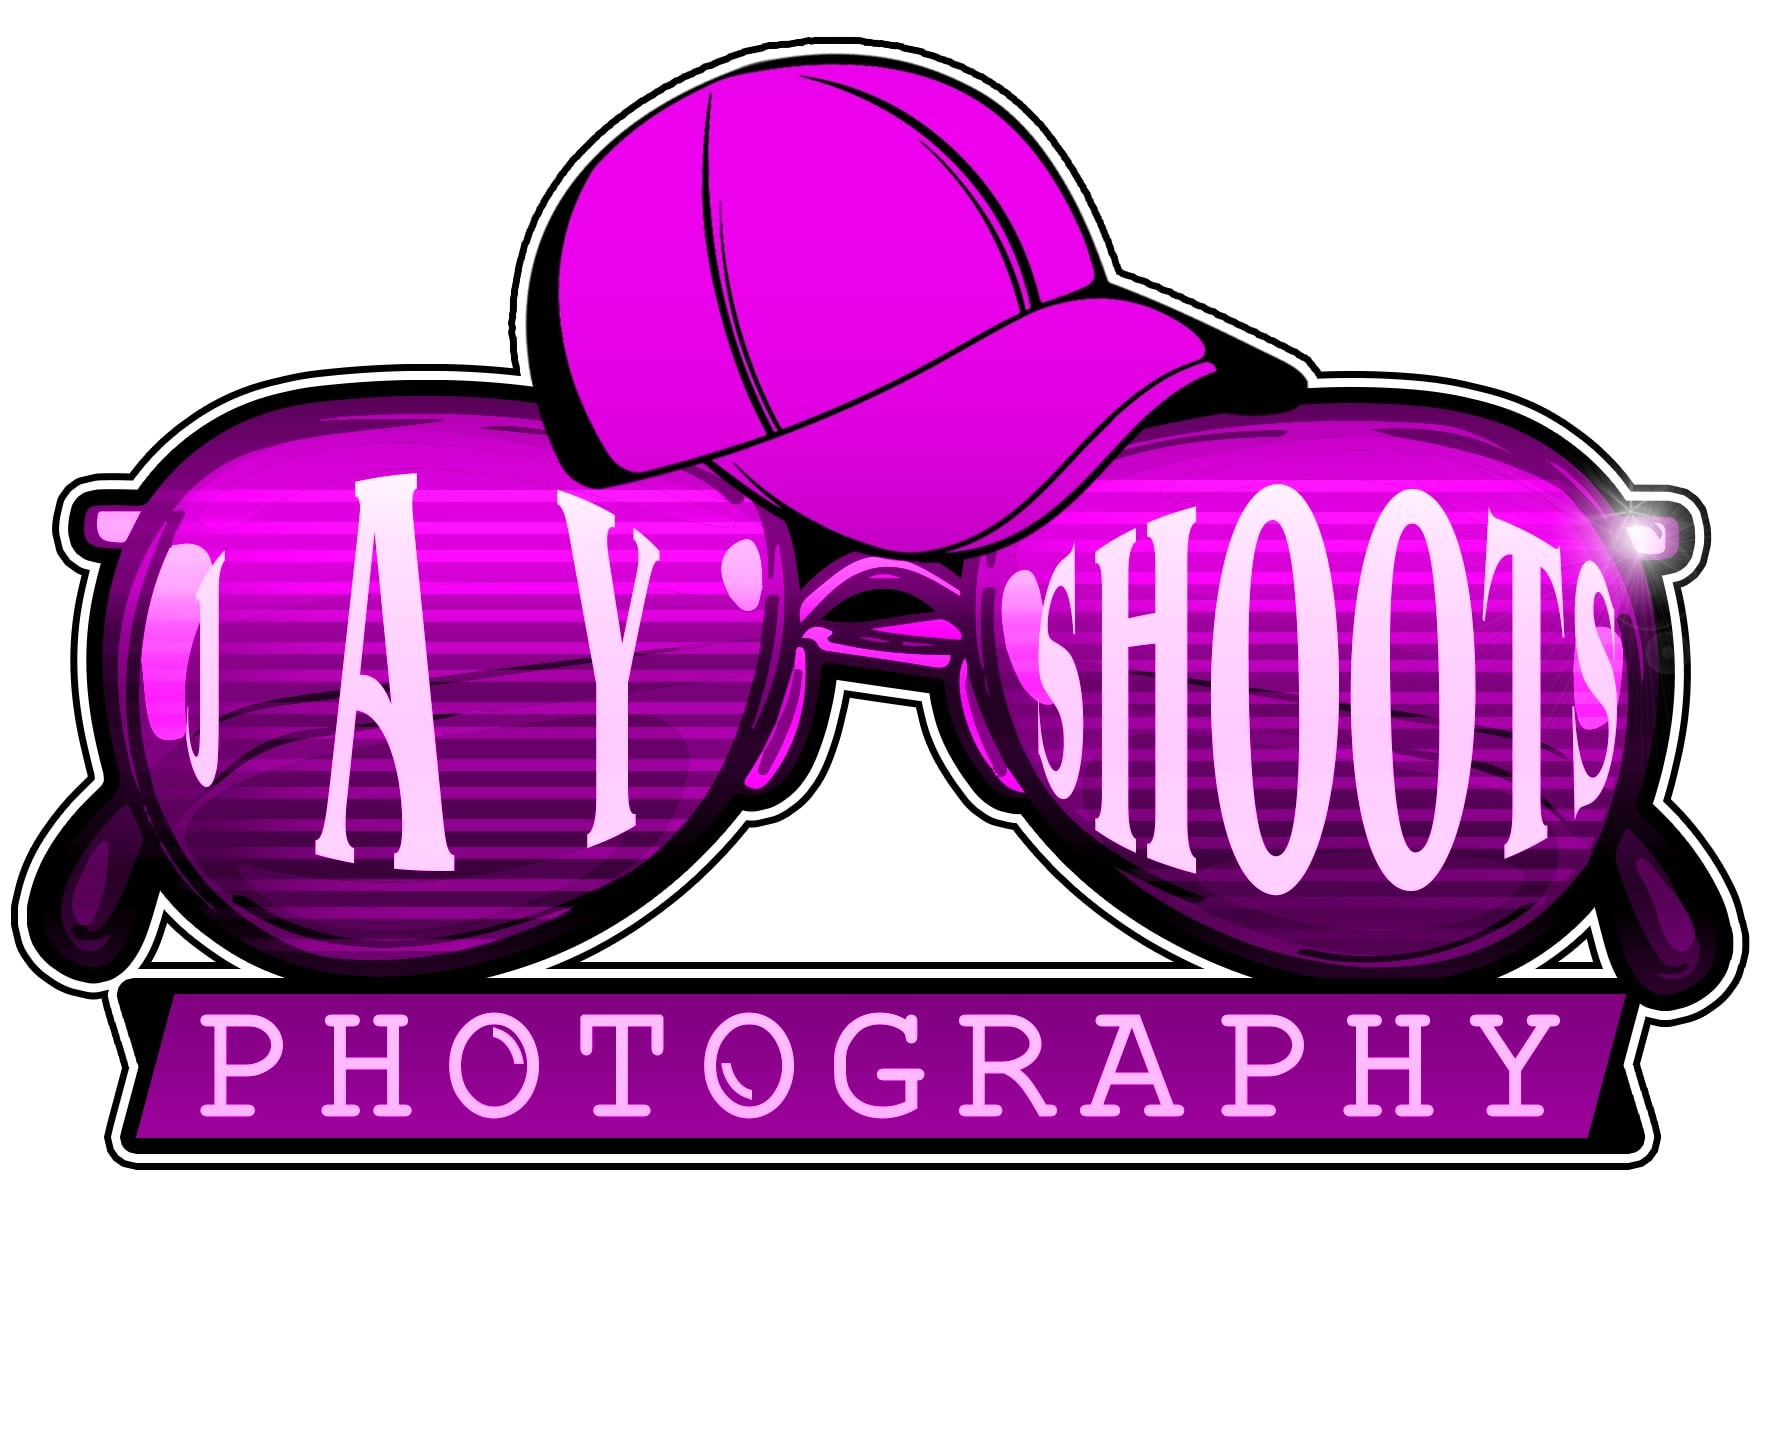 Jay Shoots Photography